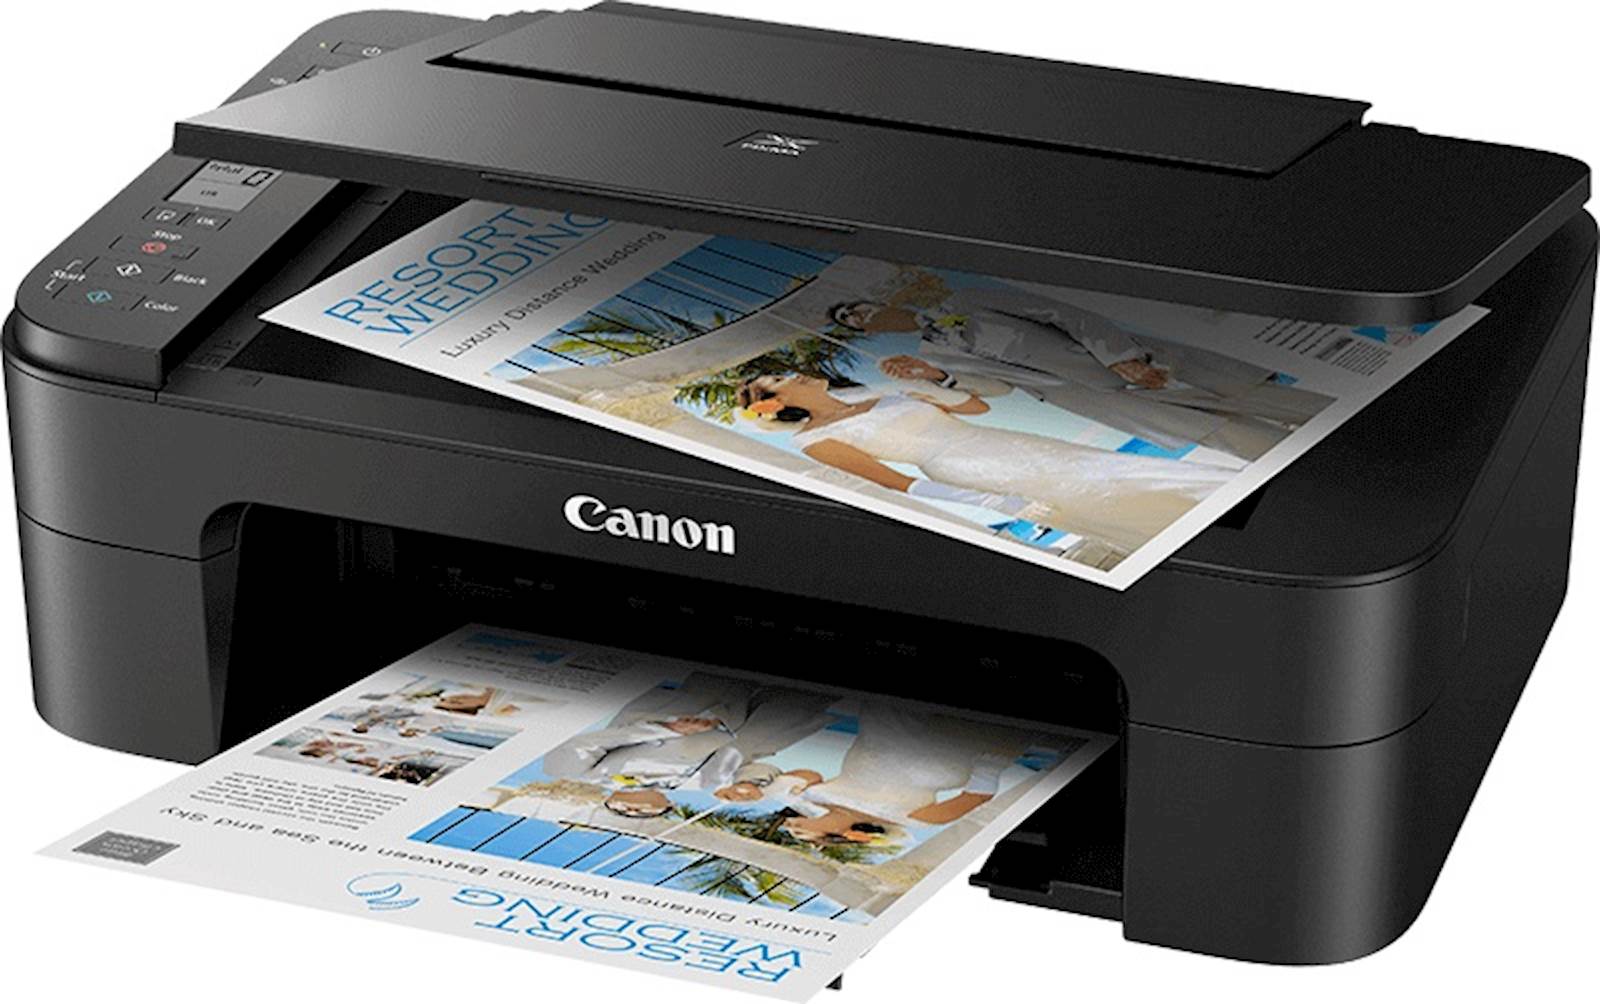 Printer CANON MFP Pixma TS3350 COLOR A4 WiFi